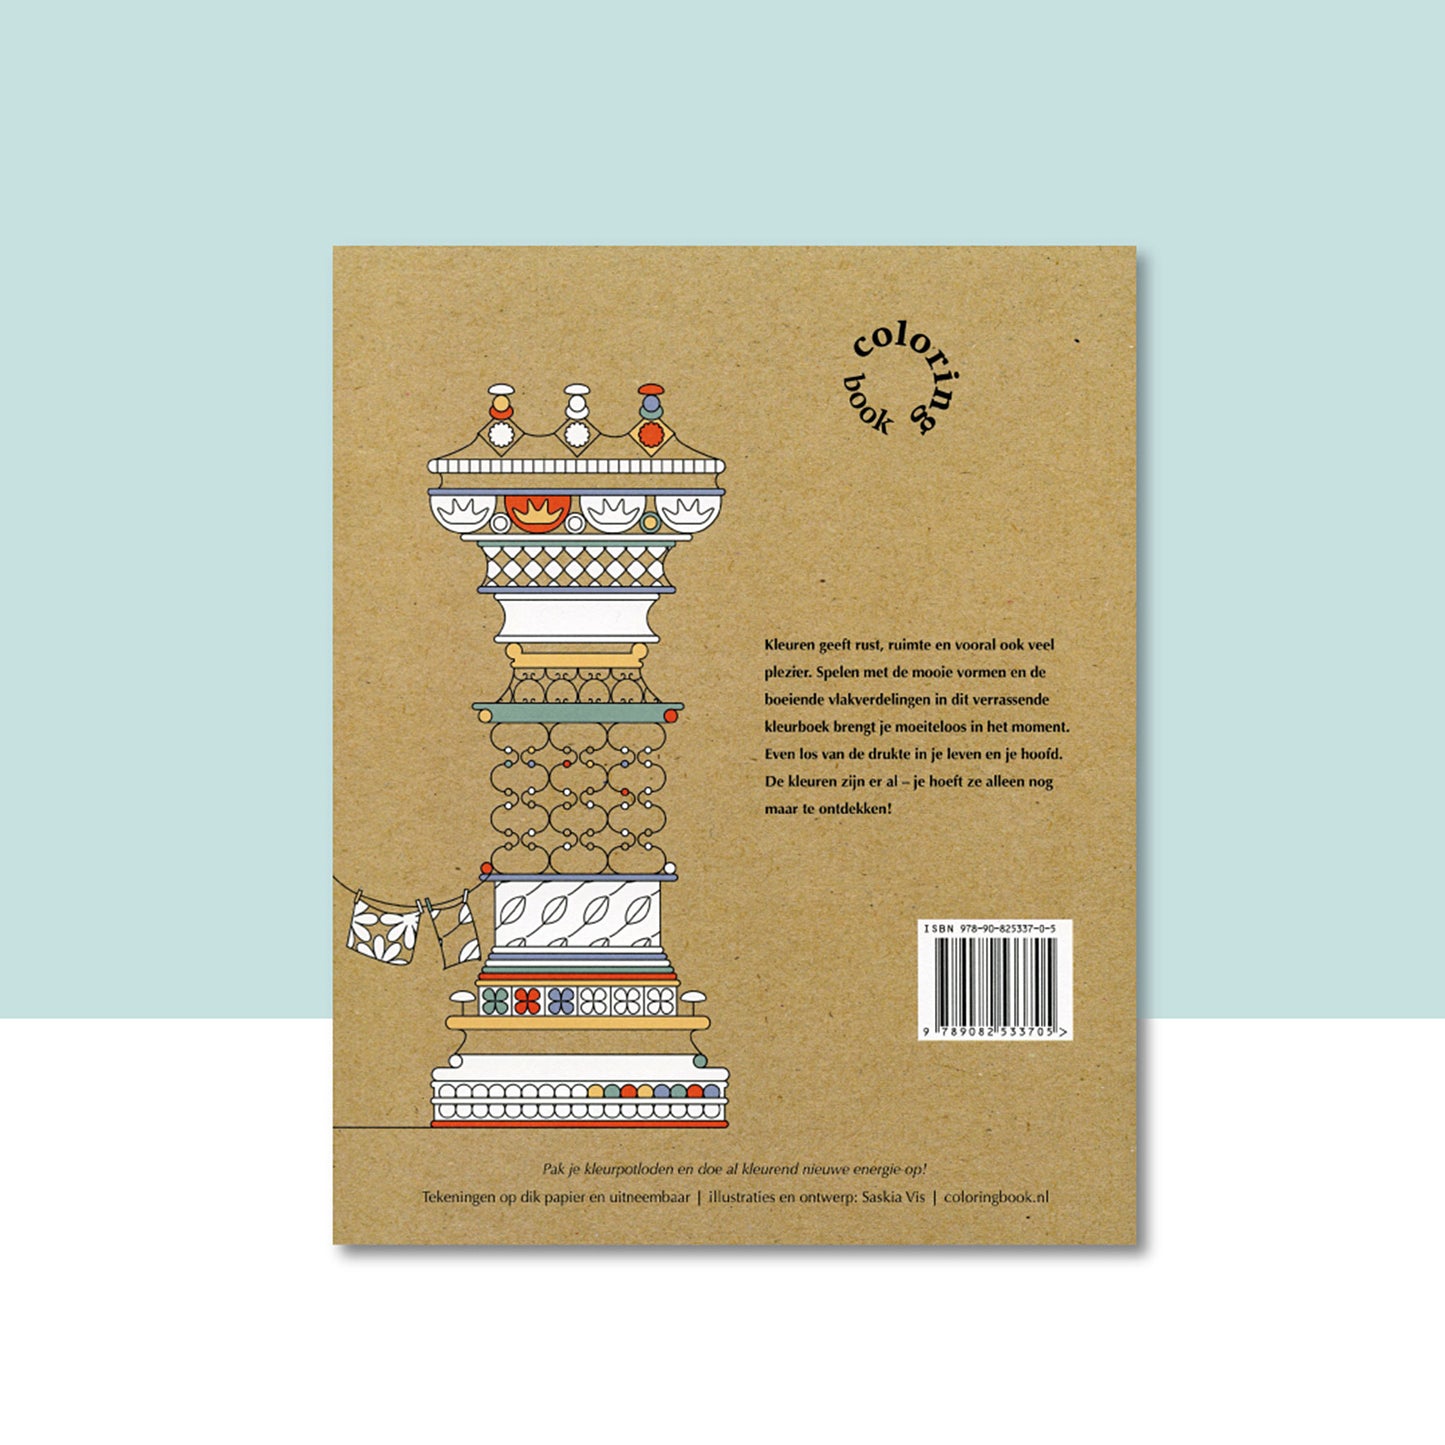 Productafbeelding, "(modern dutch) coloring book" nummer 1, met de achterzijde van het omslag in beeld